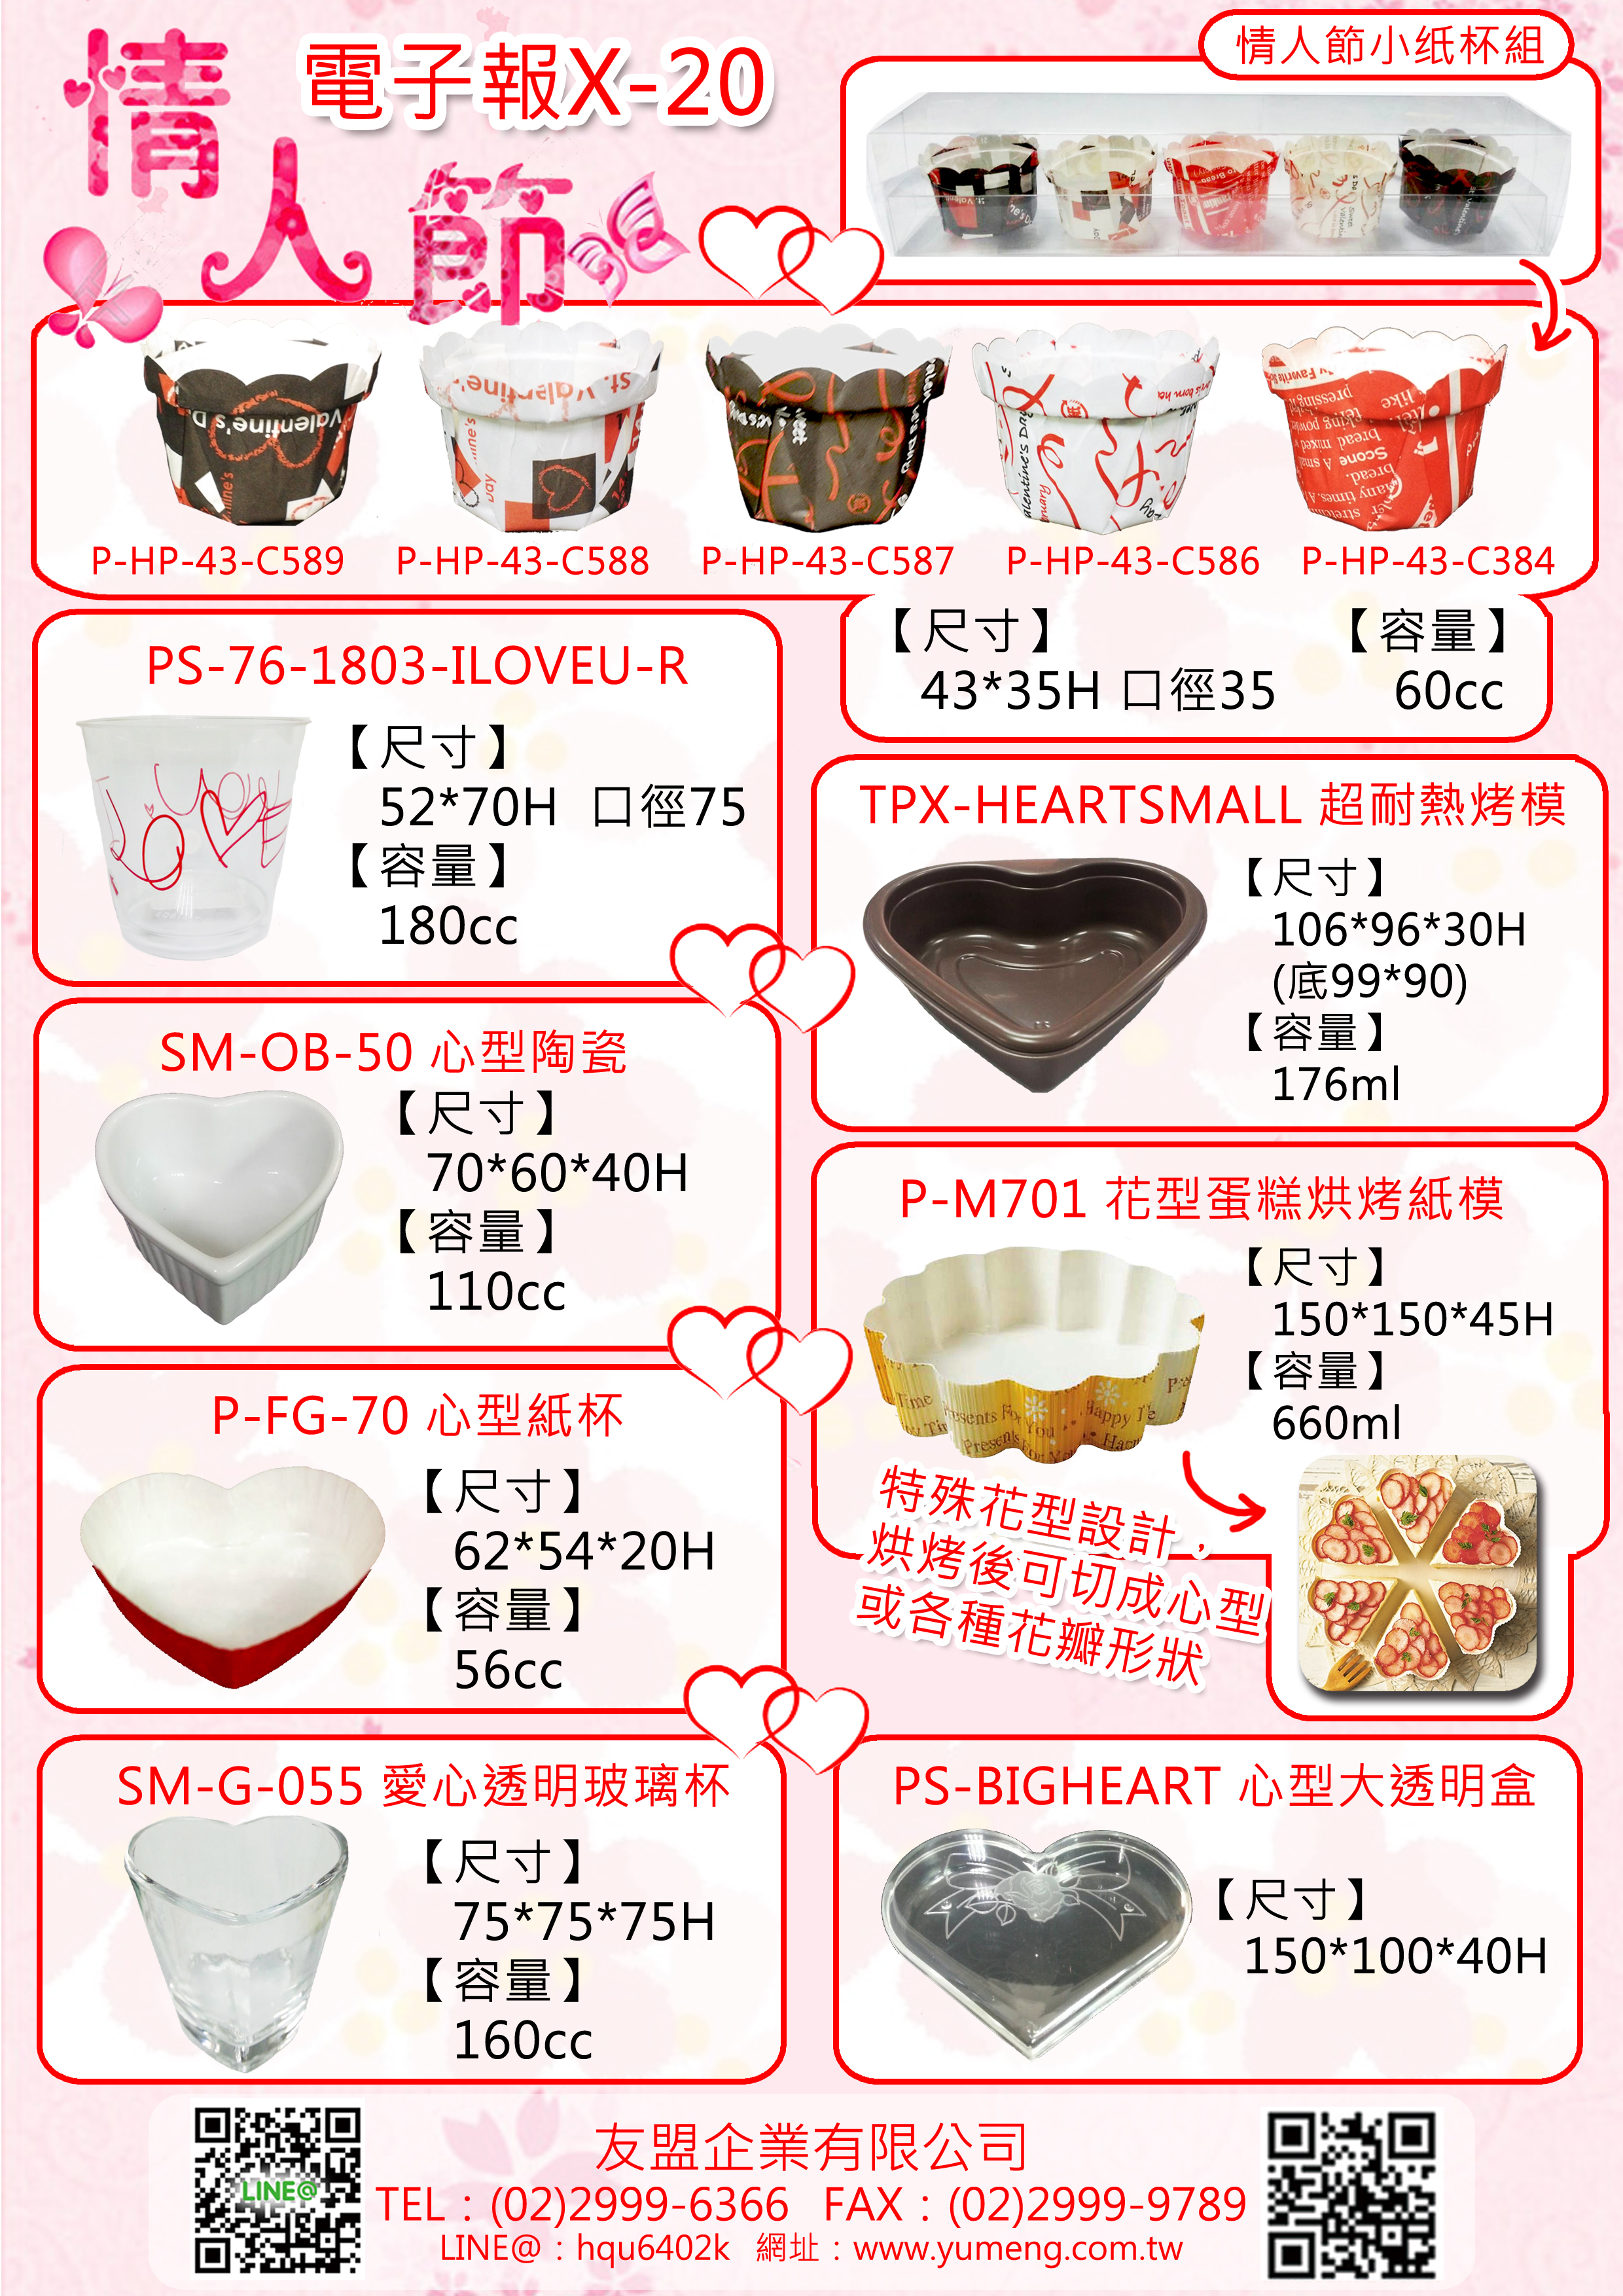 日本包材- 情人節 愛心烤模 玻璃杯 花朵蛋糕烤模 心型陶瓷甜點杯 愛心盒 X-20 